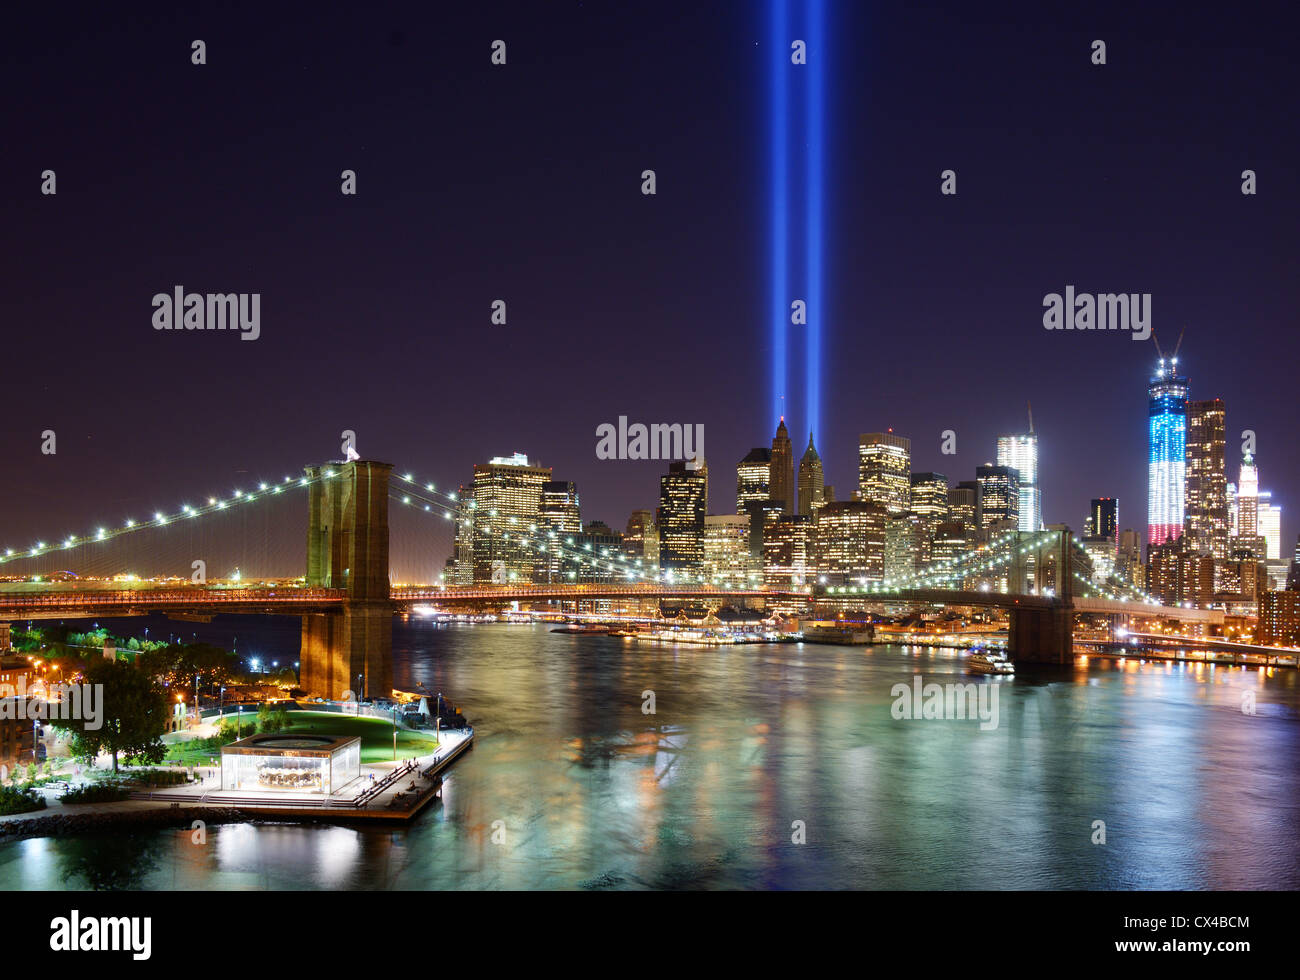 Rendre hommage à la lumière dans le centre-ville de New York en souvenir de l'attentat du 11 septembre. Banque D'Images